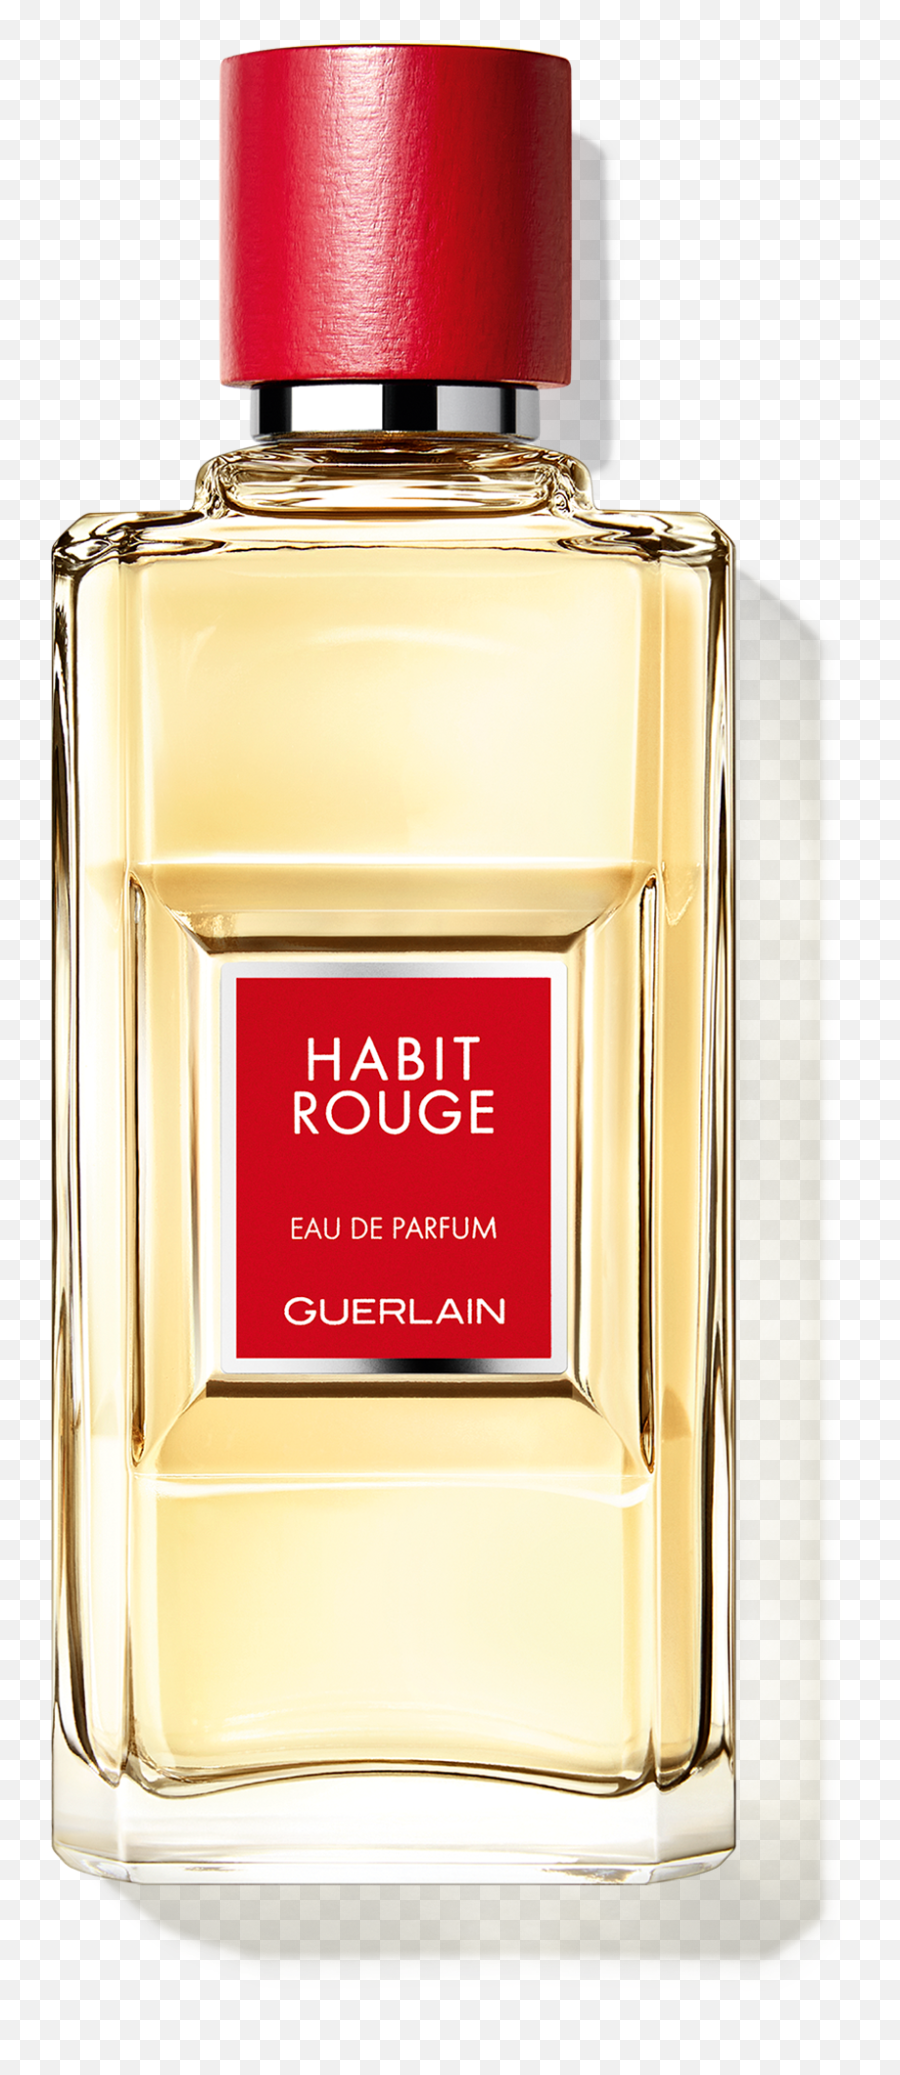 Habit Rouge Eau De Parfum Guerlain - Guerlain Parfum Homme Habit Rouge Emoji,How To Properly Bottle Up Emotions